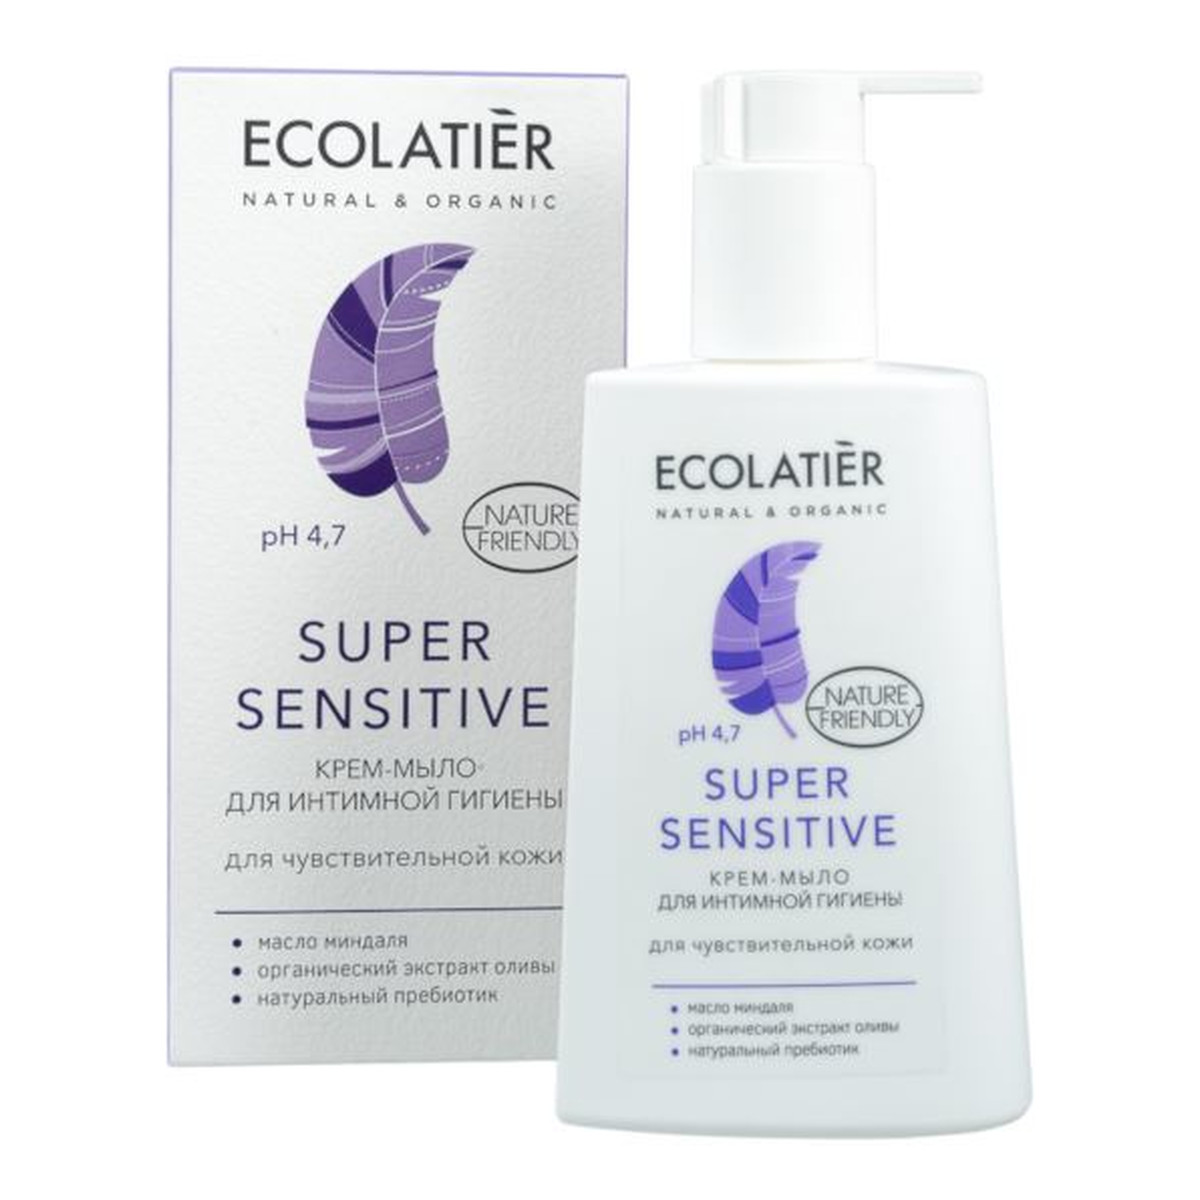 Ecolatier Super Sensitive Krem-mydło do higieny intymnej pH 4,7 Probiotyk kwas mlekowy 250ml